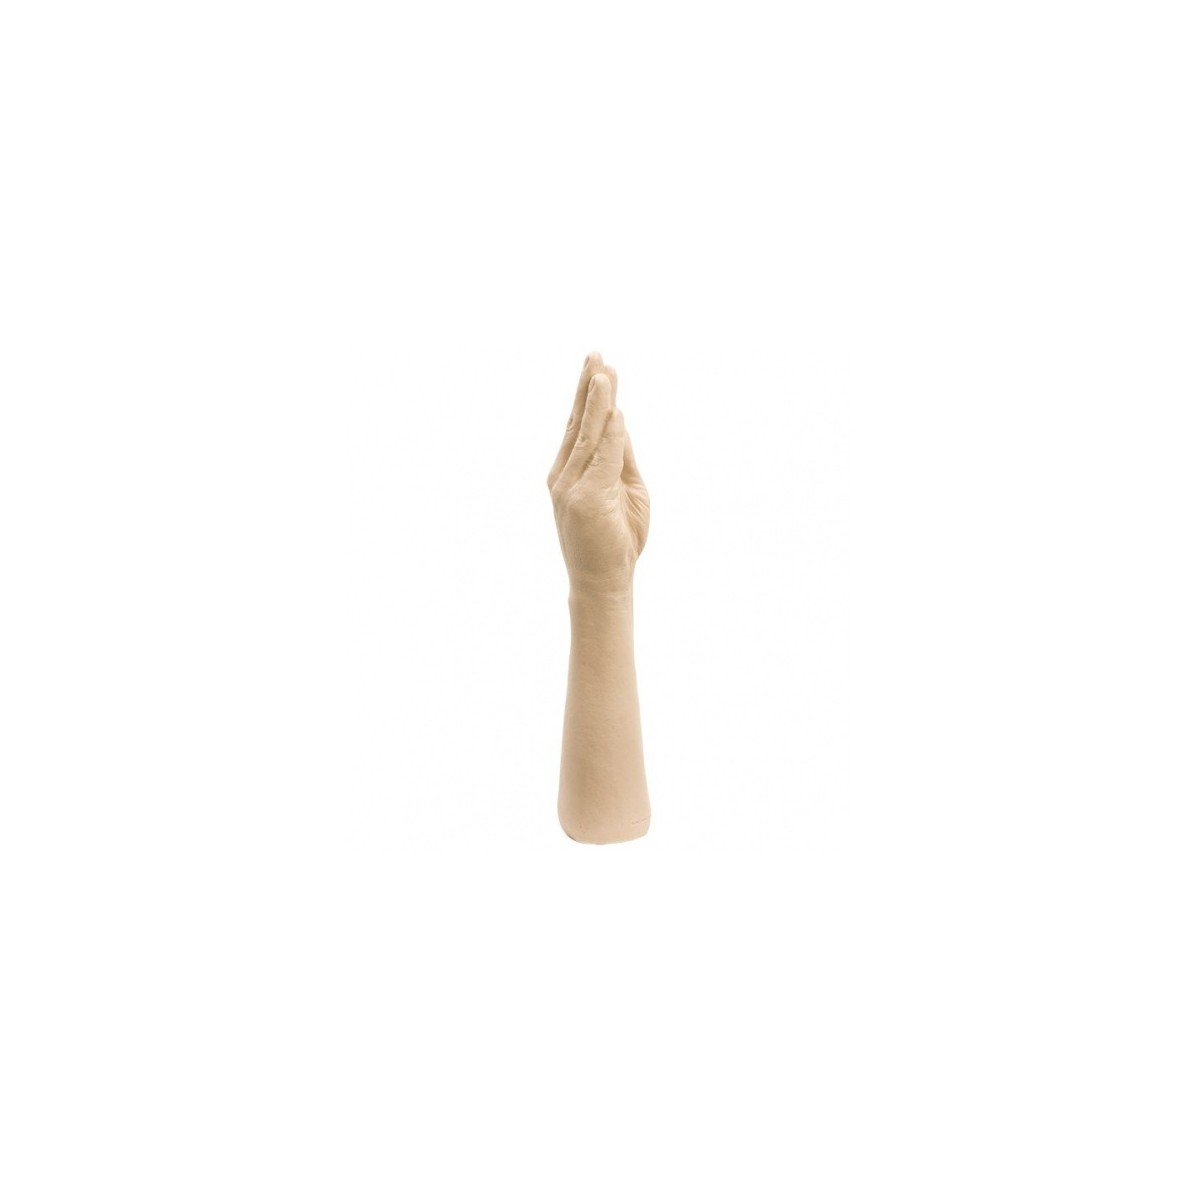 Fallo anale e vaginale a forma di braccio mano per fisting Hand